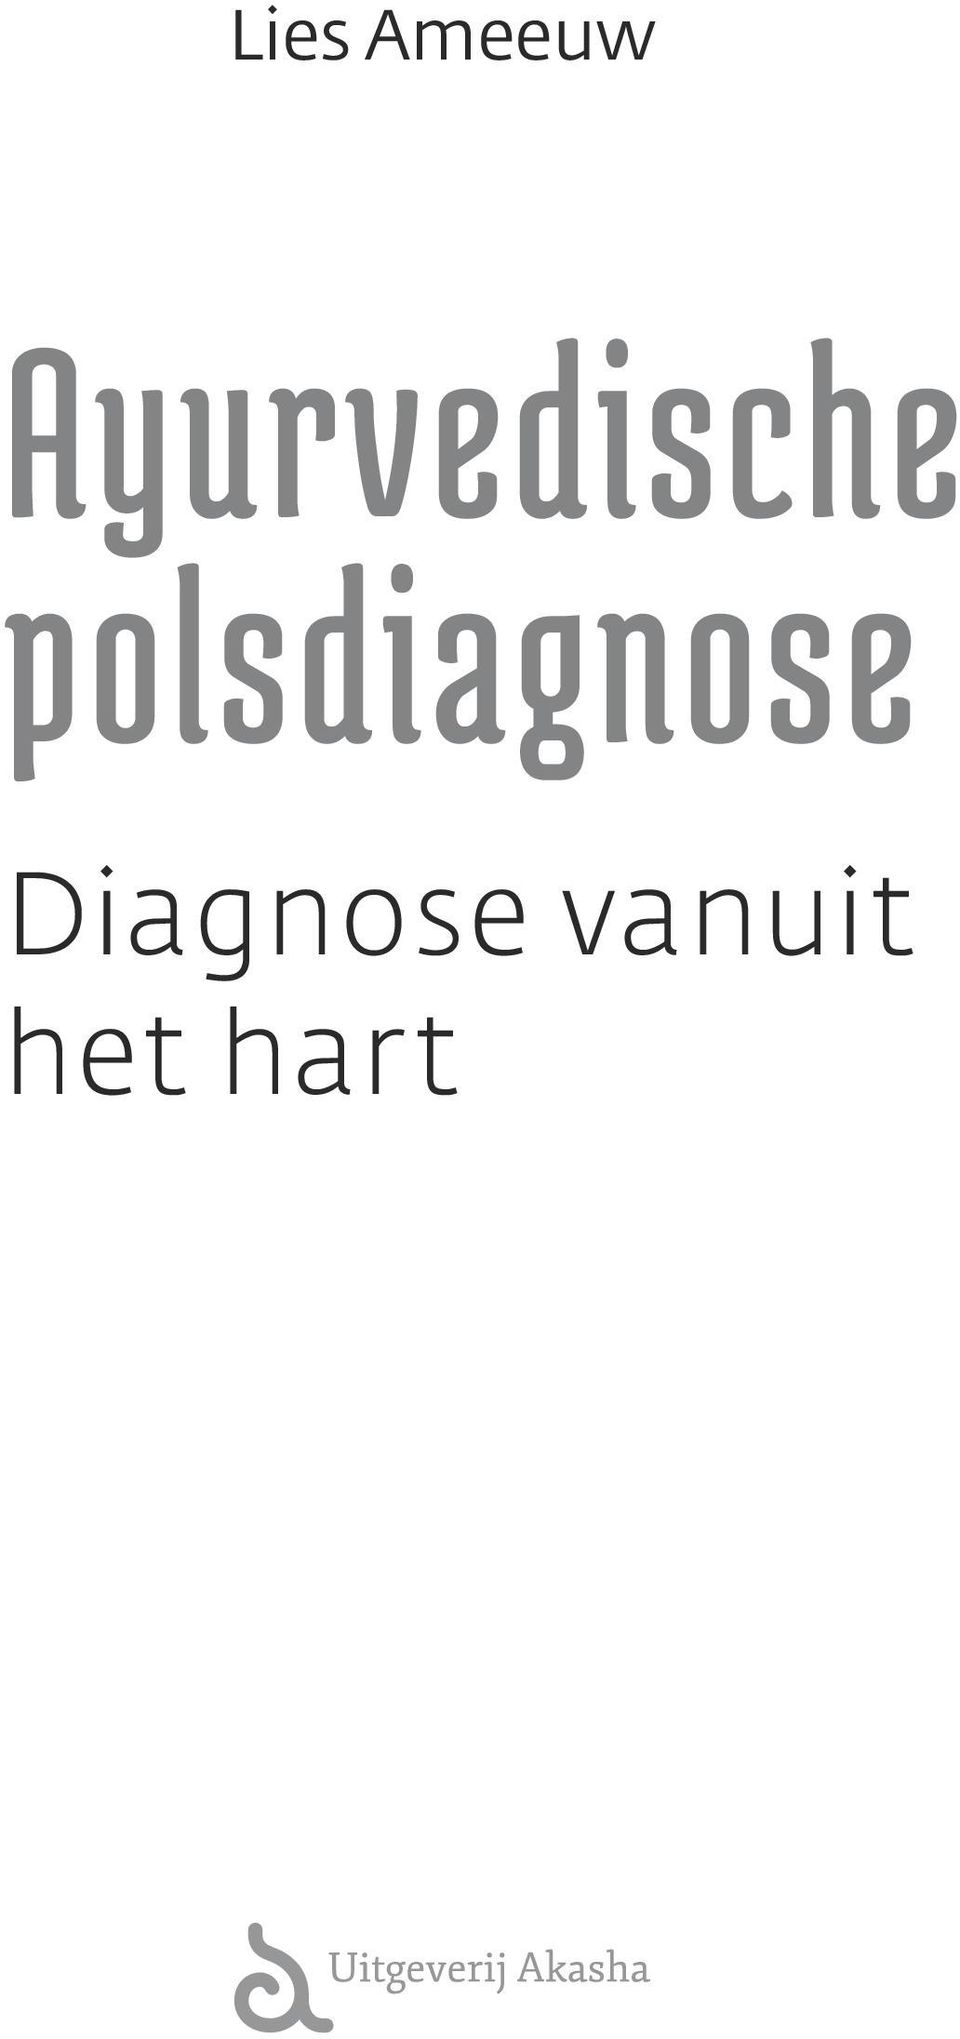 polsdiagnose